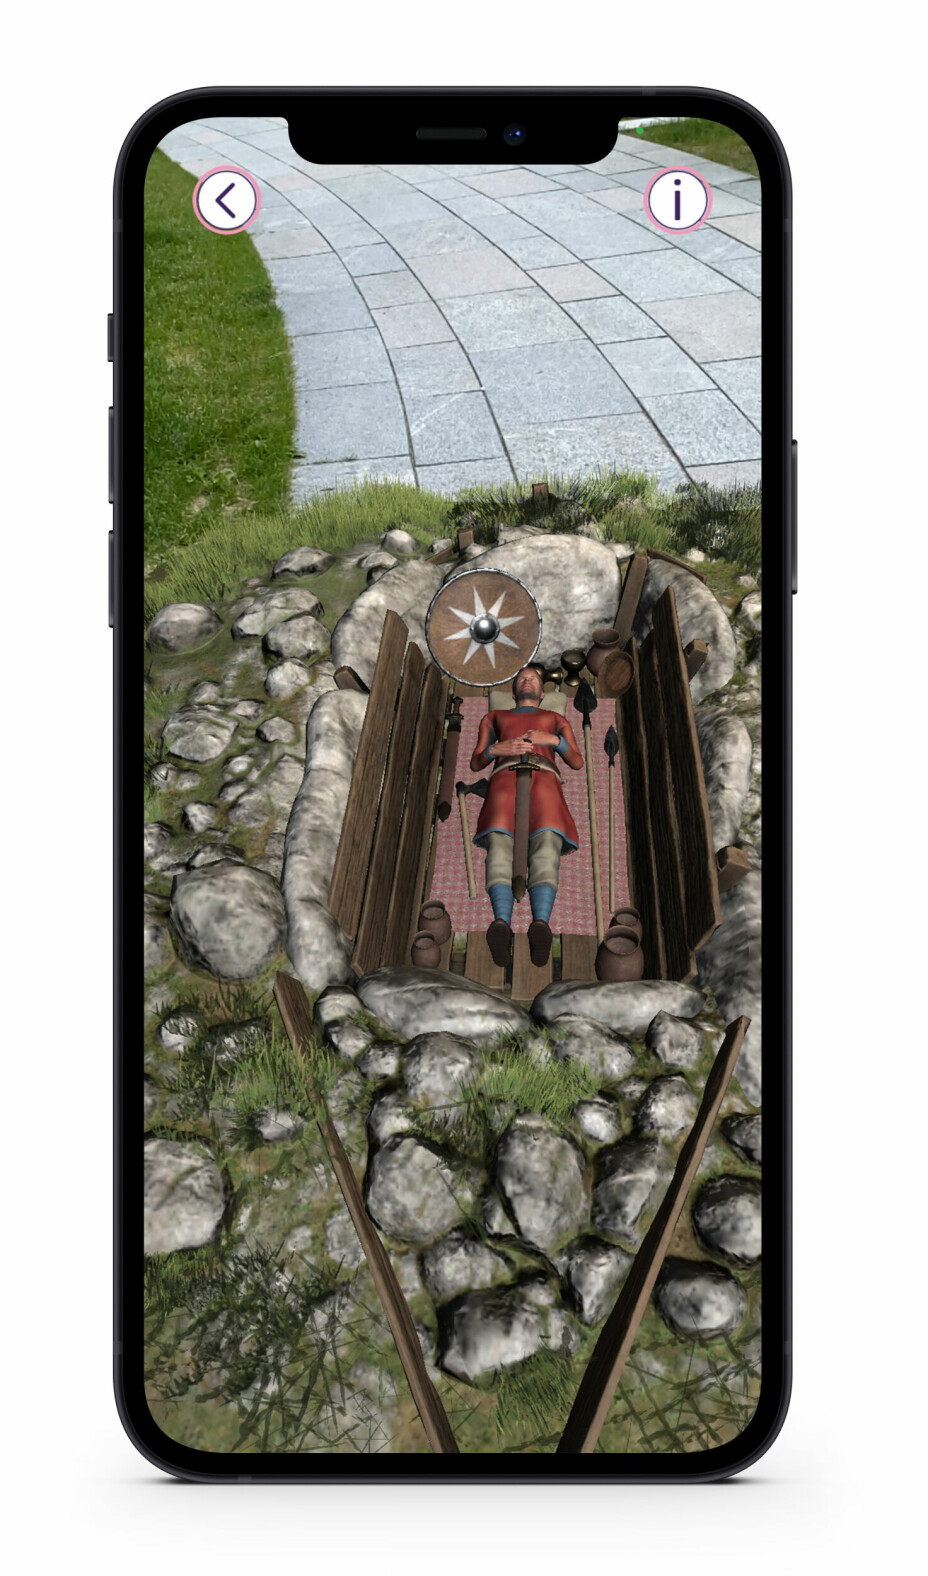 I et av spillene til Wittario kan du komme over en viking-grav i ditt eget nabolag eller på skoleplassen.